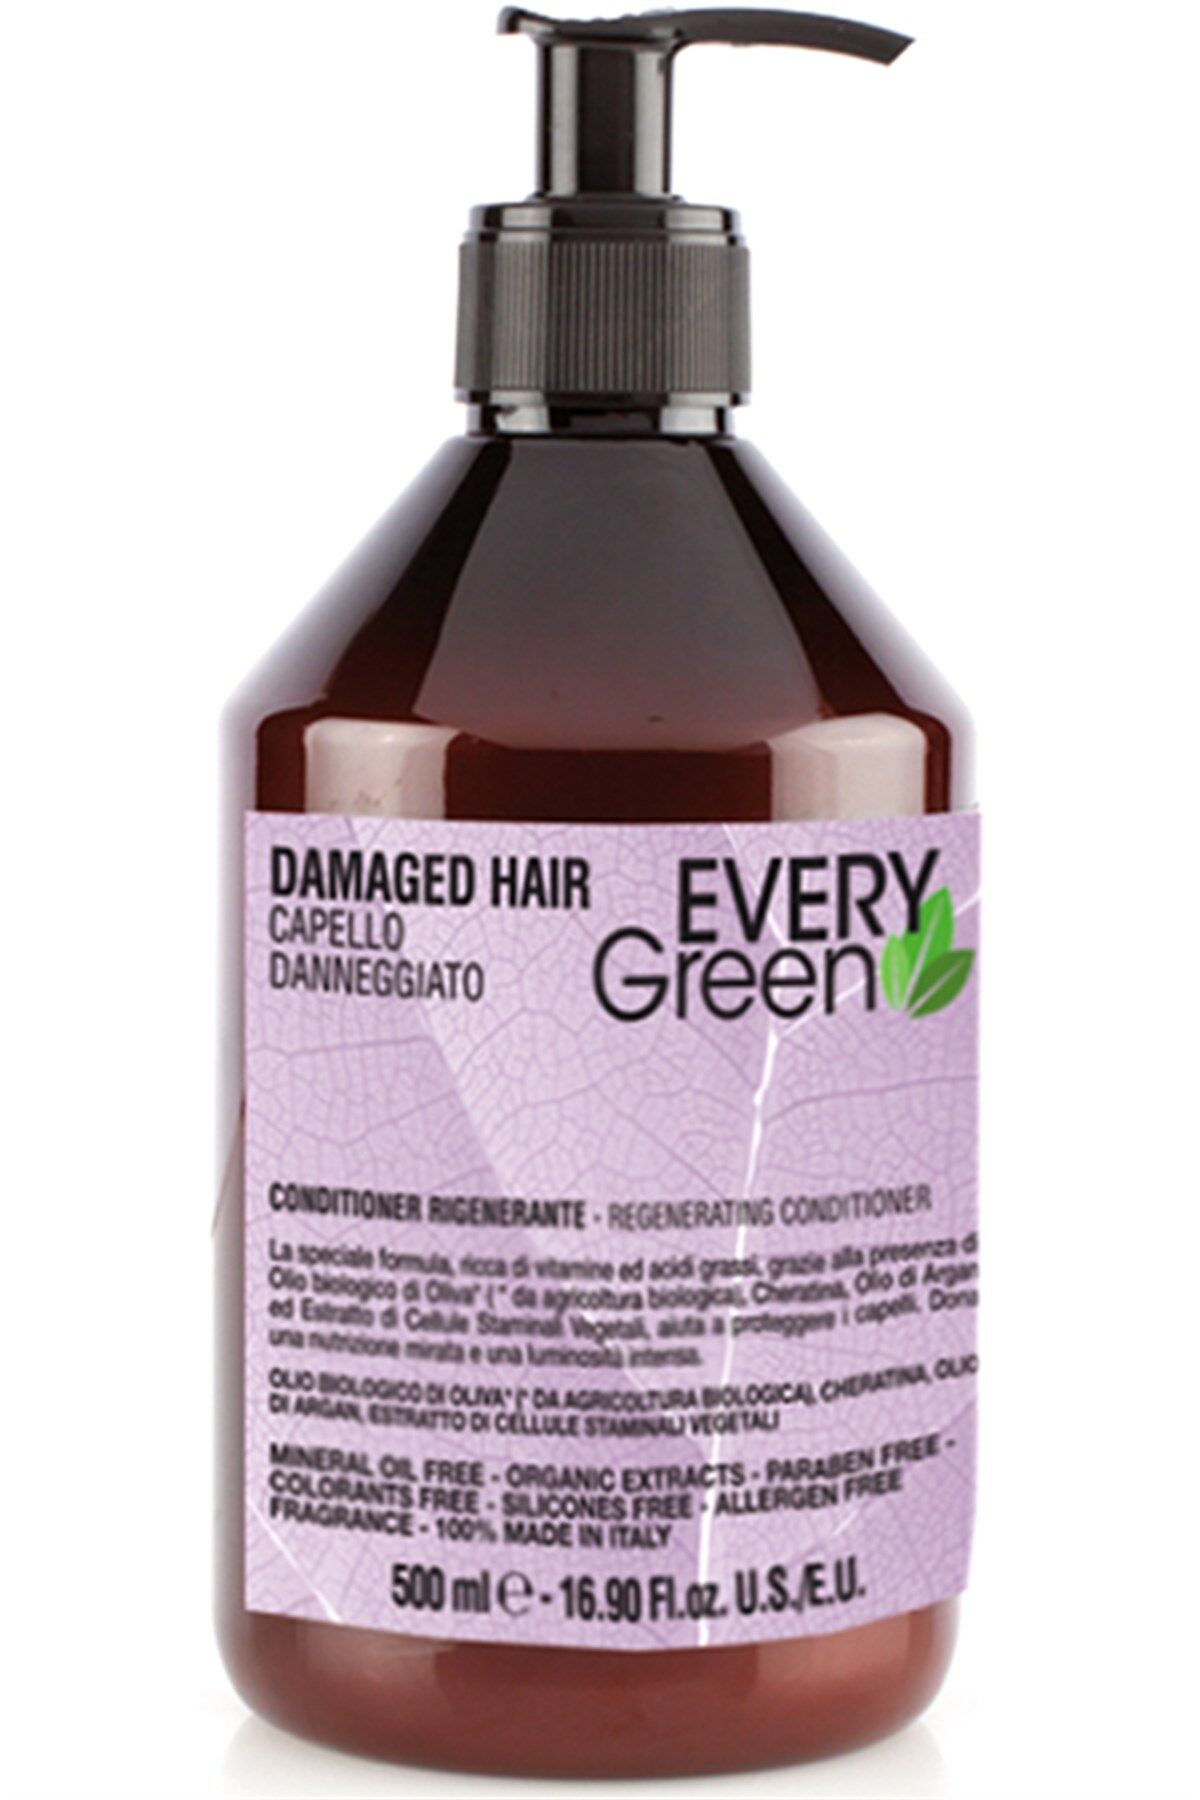 EveryGreen Damaged Hair Regenerating Conditioner - Yıpranmış Saçlara Özel Bakım Kremi 500 Ml.